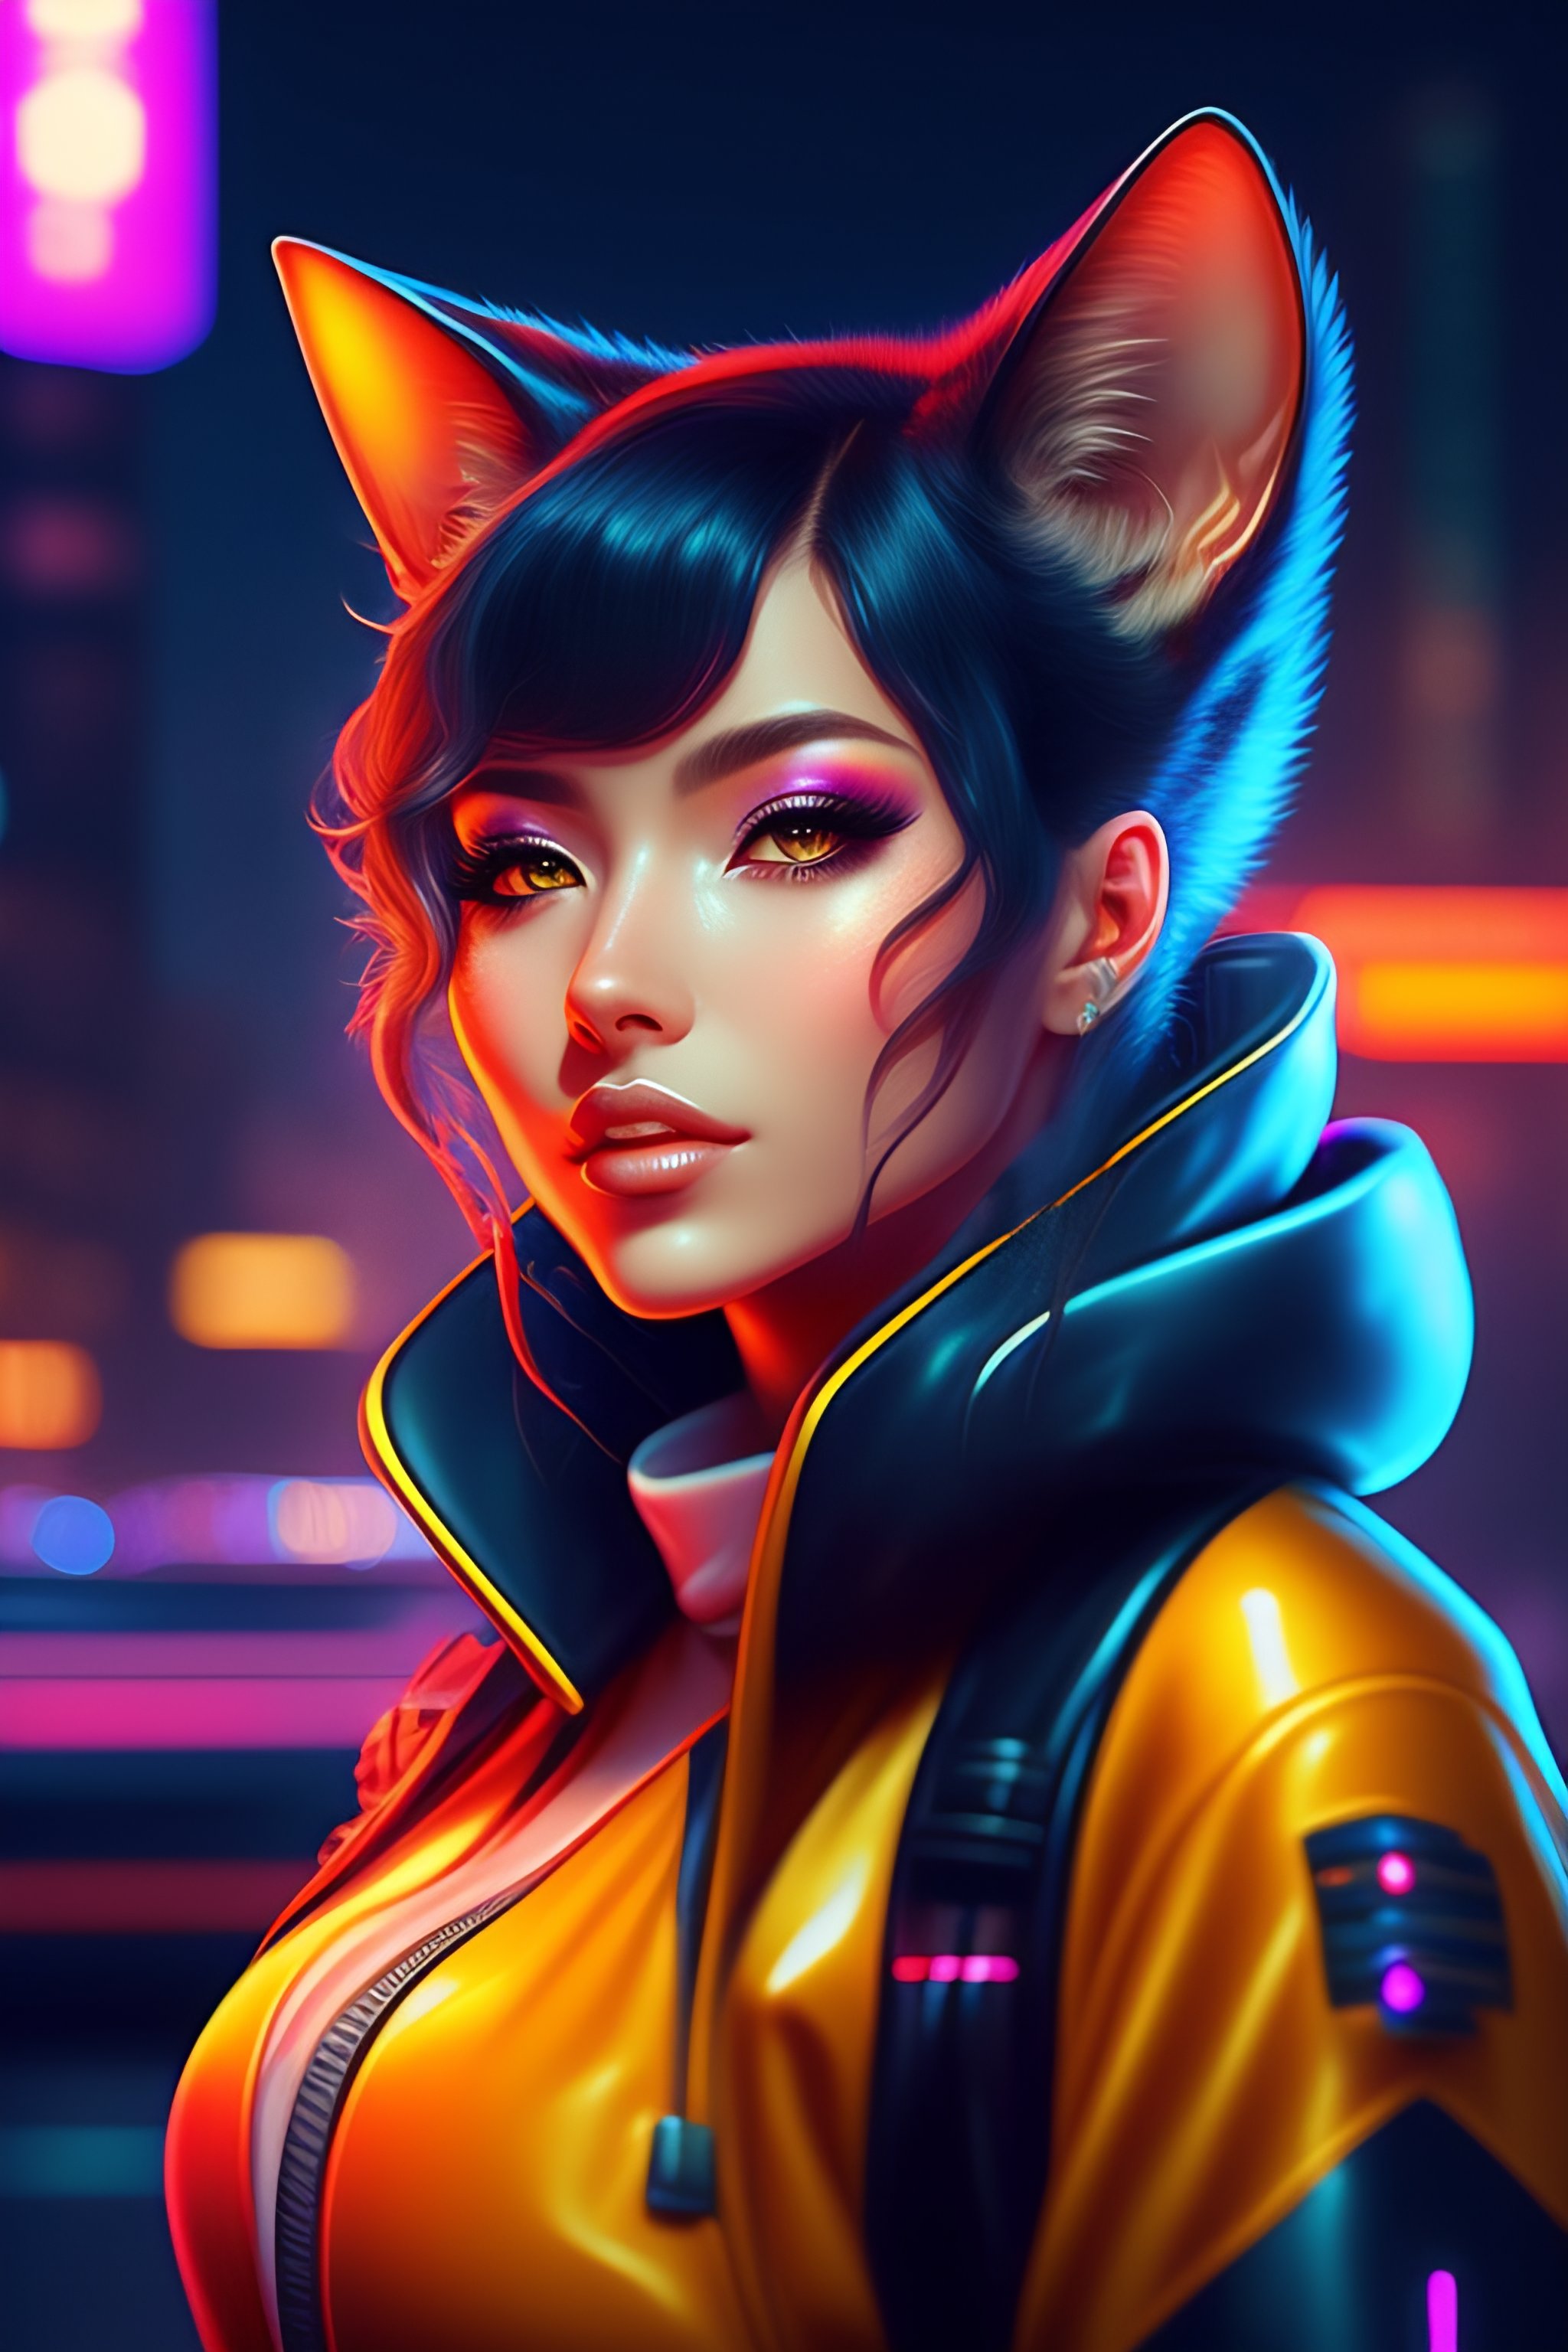 Lexica - Portrait of a Cute Cyberpunk Cat Girl in a Retro Future ...